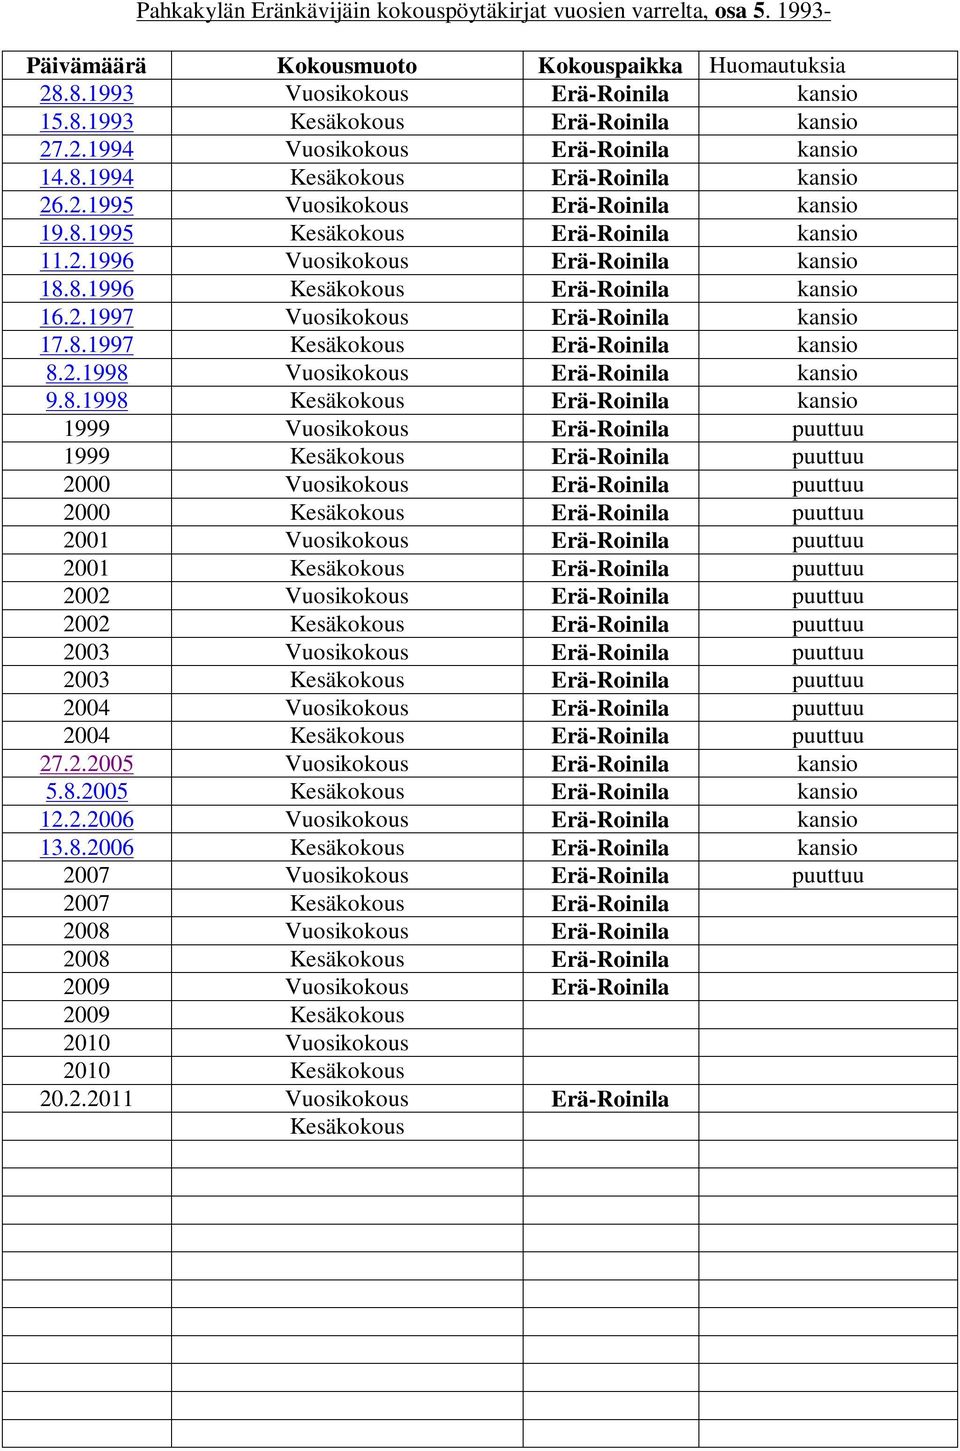 8.1996 Kesäkokous Erä-Roinila kansio 16.2.1997 Vuosikokous Erä-Roinila kansio 17.8.1997 Kesäkokous Erä-Roinila kansio 8.2.1998 Vuosikokous Erä-Roinila kansio 9.8.1998 Kesäkokous Erä-Roinila kansio